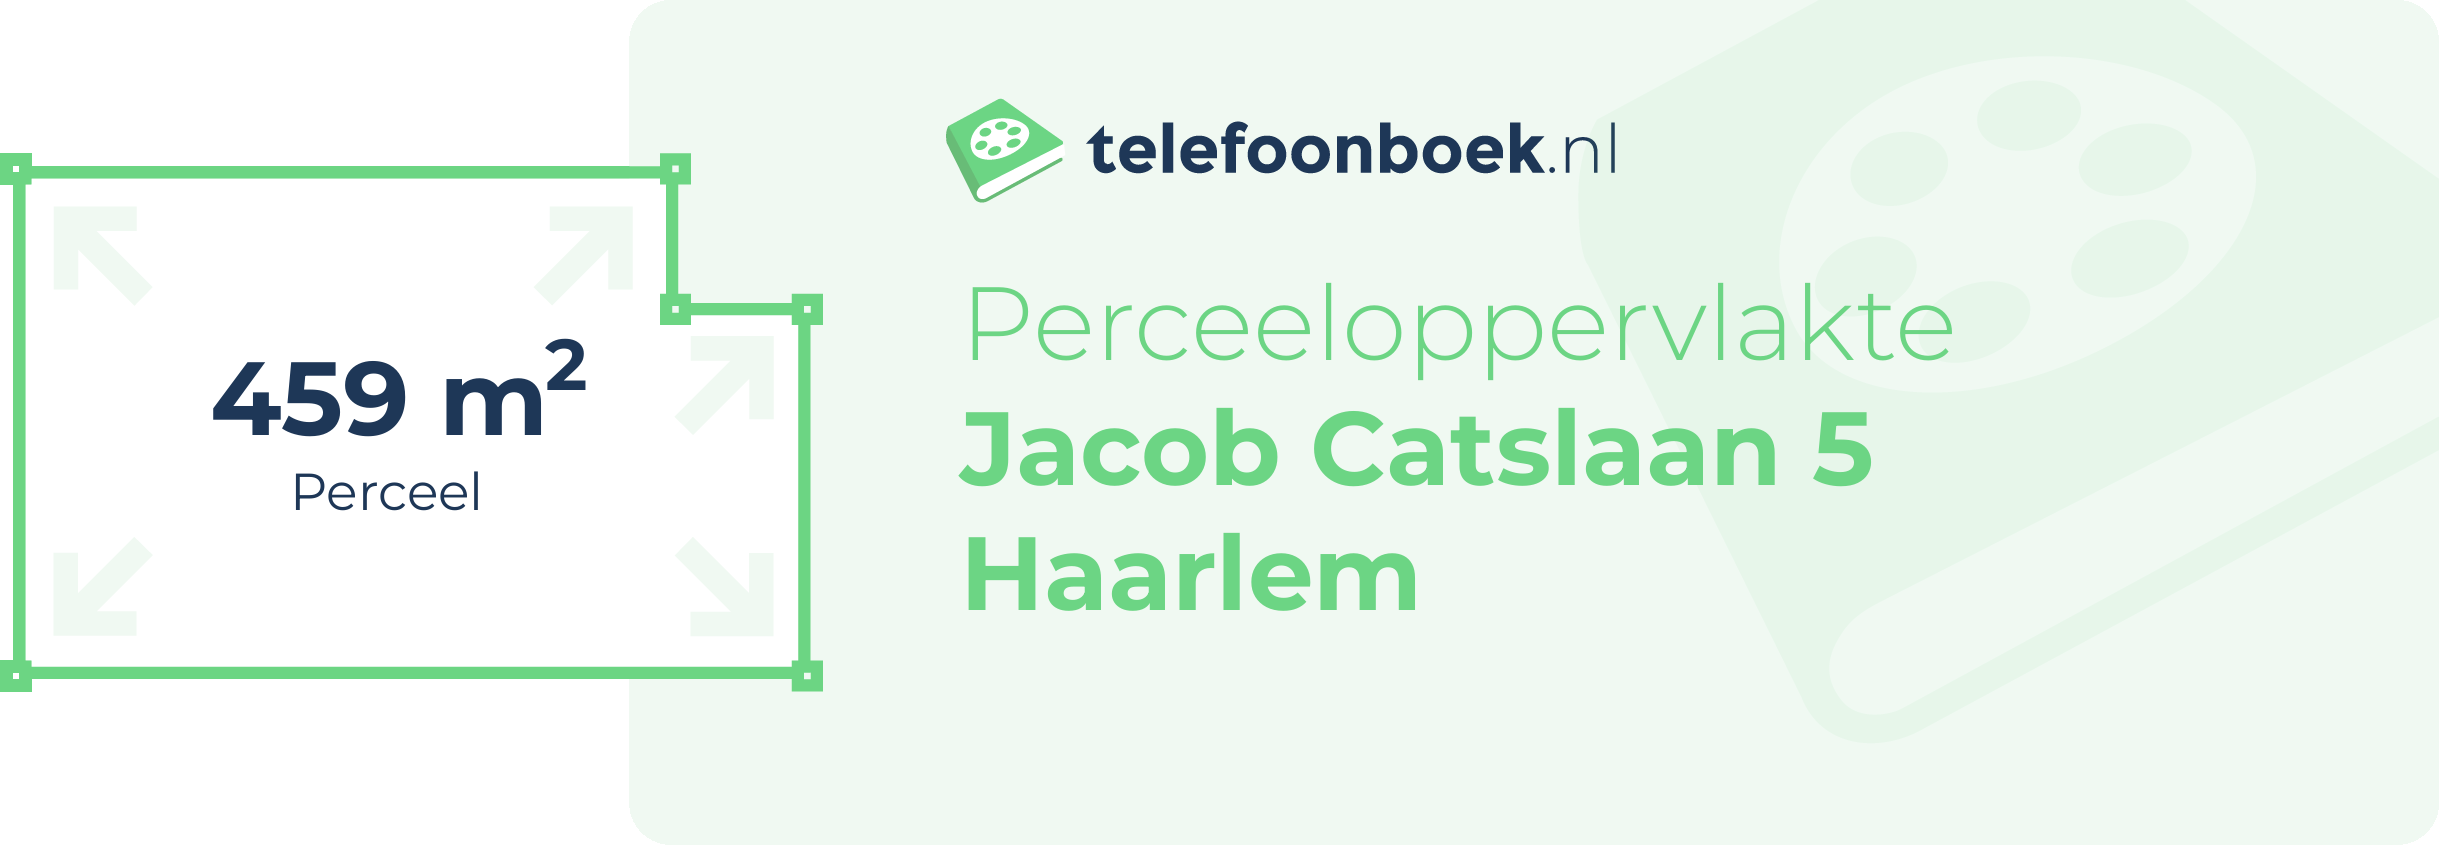 Perceeloppervlakte Jacob Catslaan 5 Haarlem